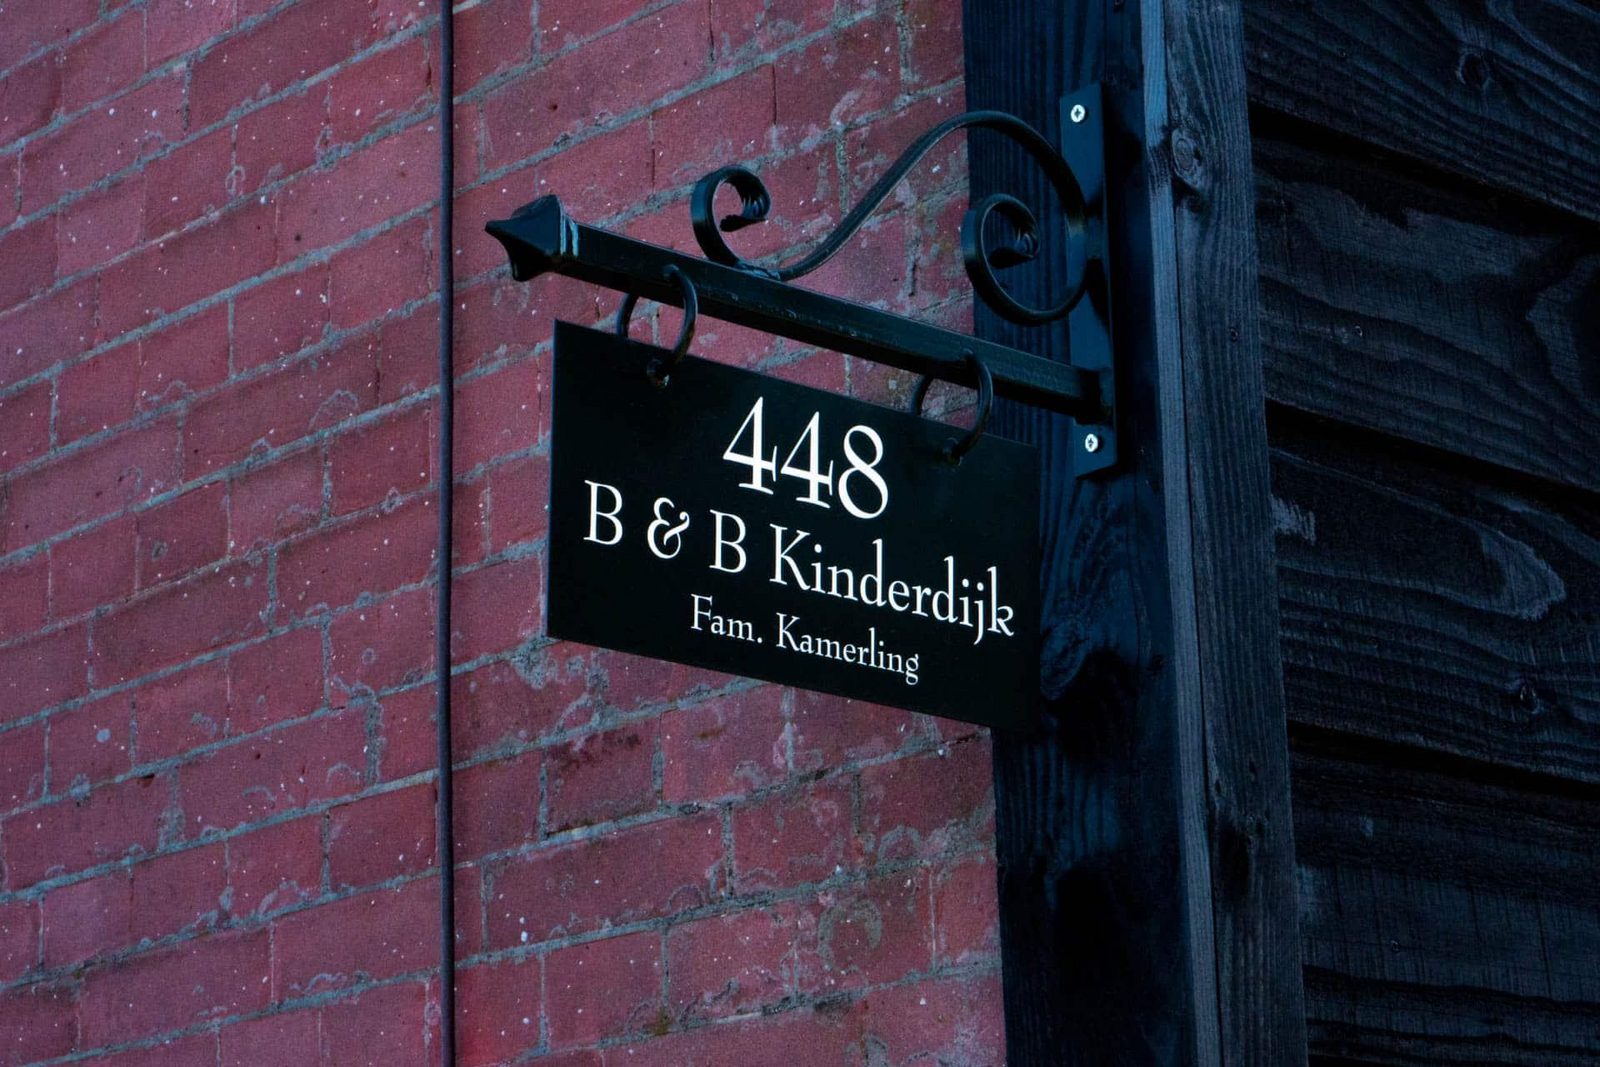 B&B Kinderdijk - De Klompenmaker